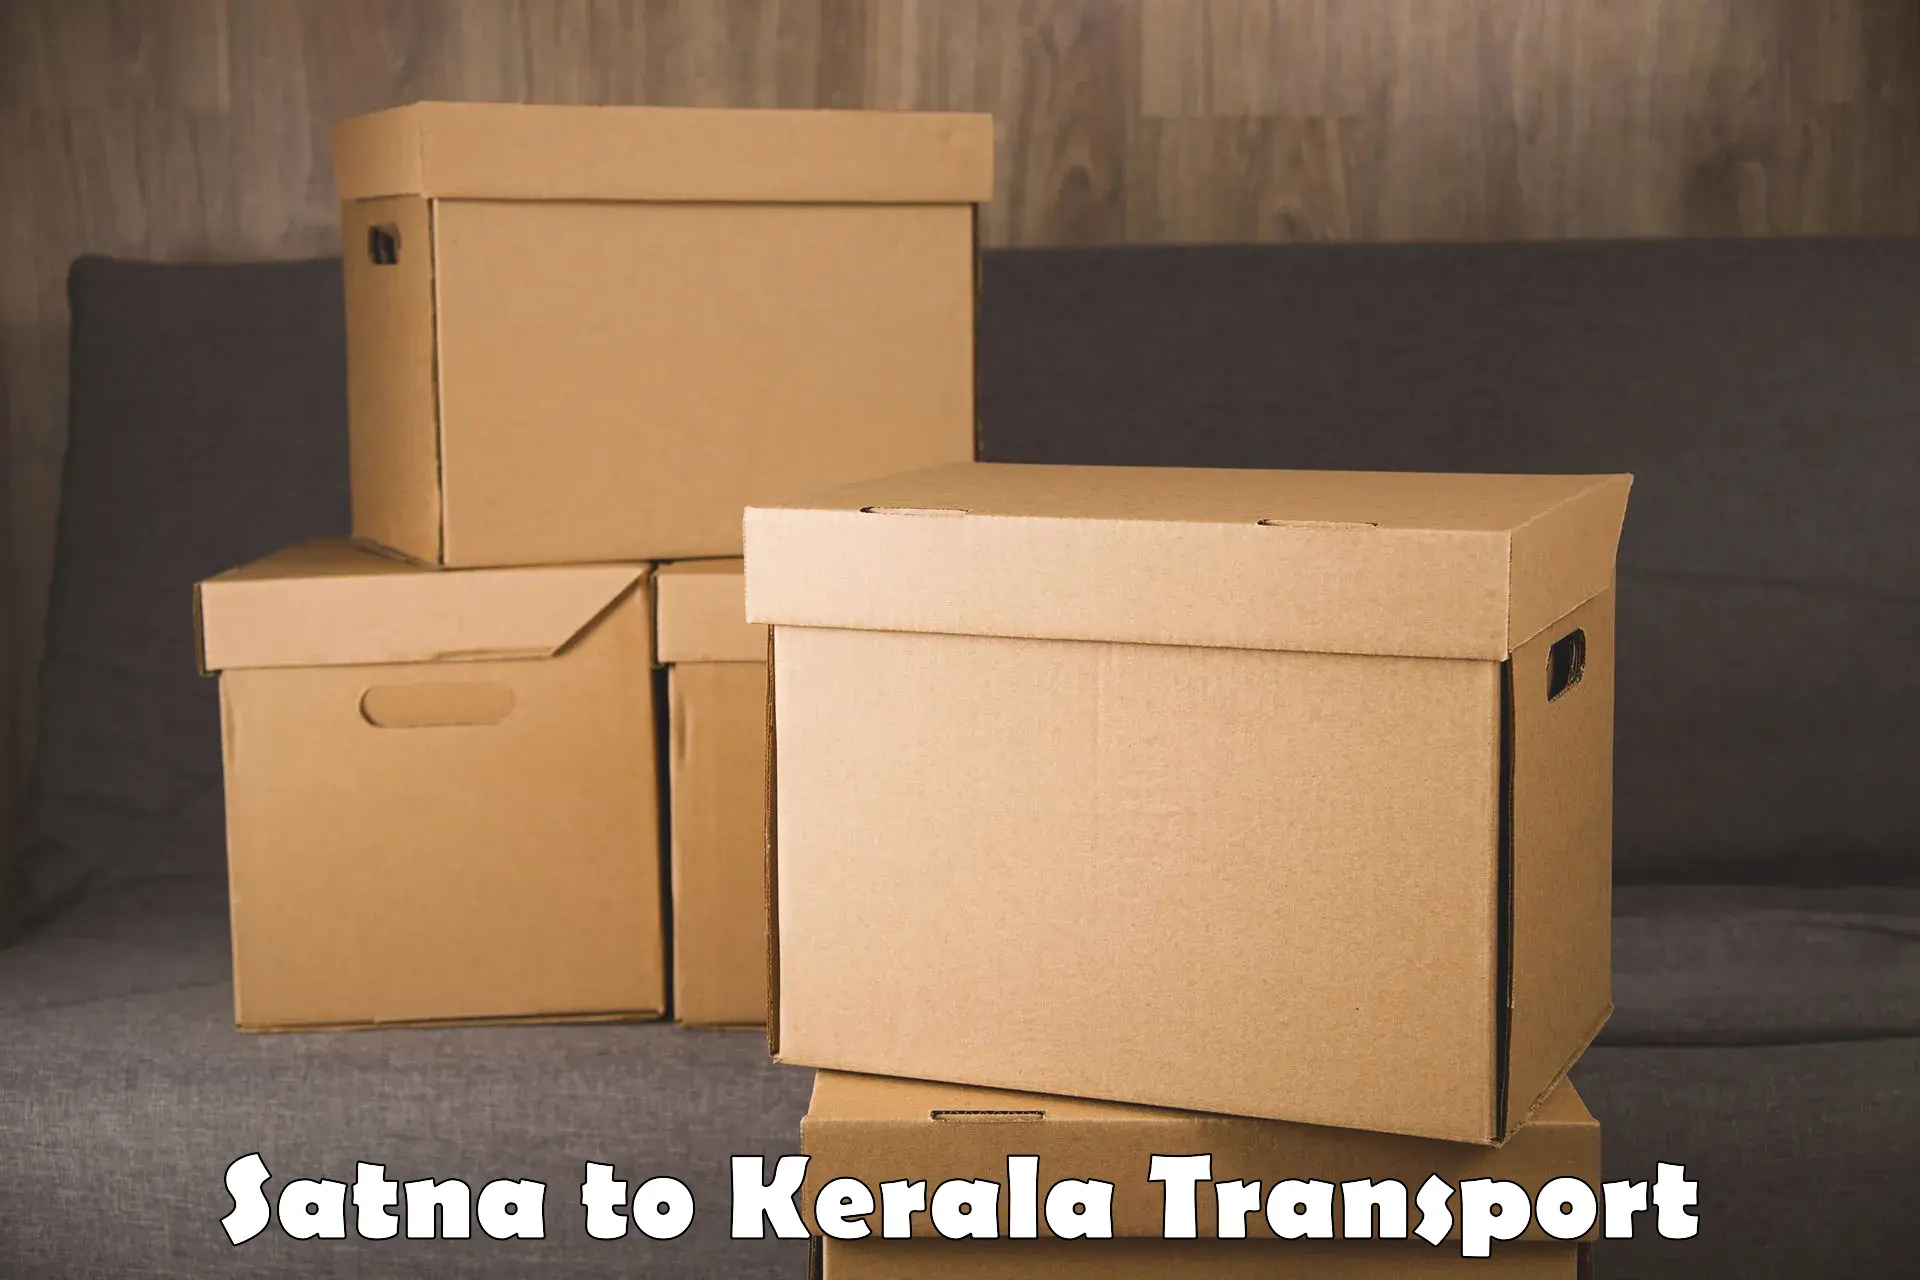 Delivery service Satna to Kuttikol